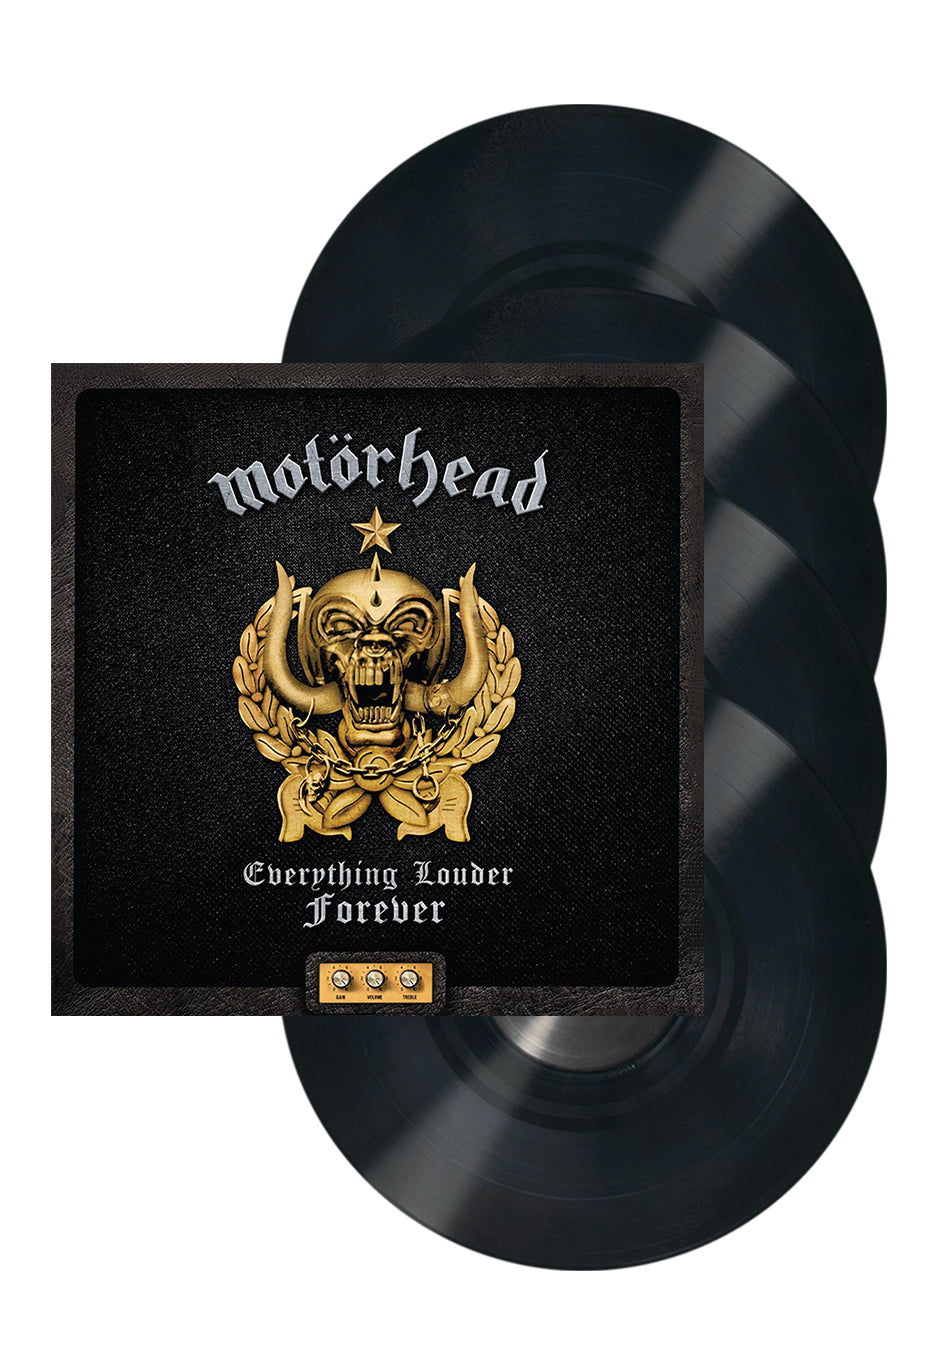 Motörhead - Everything Louder Forever - The Very Best Of Deluxe - 4 Vinyl